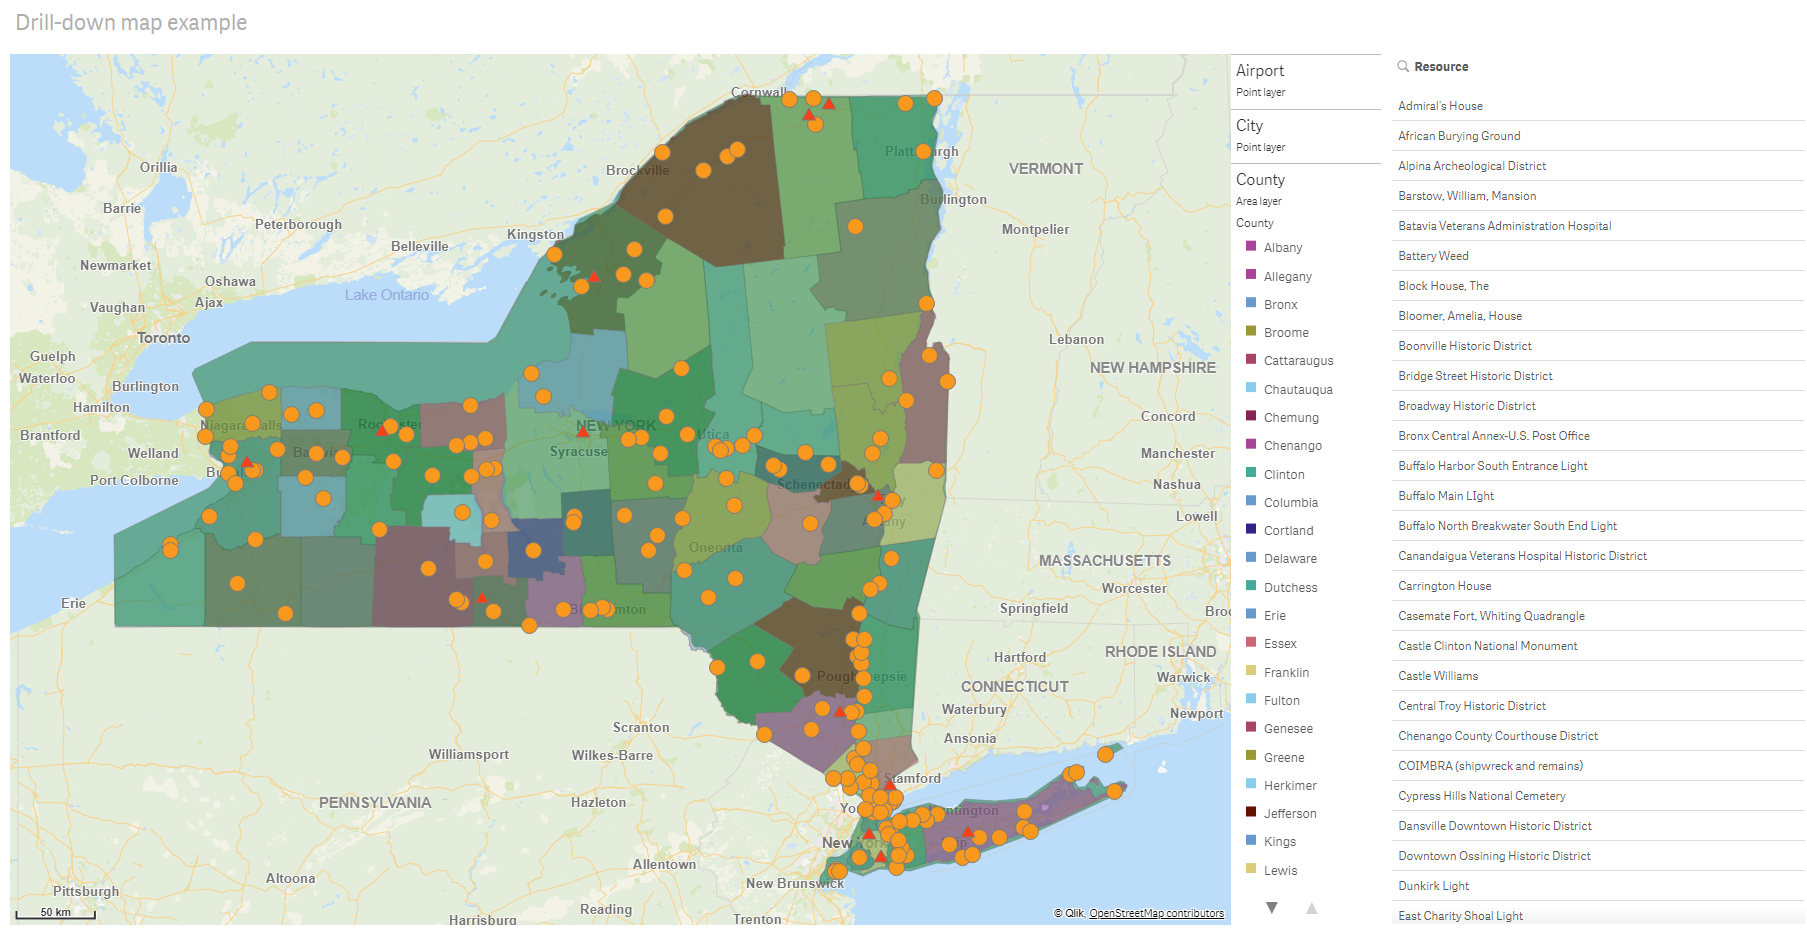 Karte mit Drilldown-Ebene und Anzeige von Countys in den USA und Flughäfen als Datenpunkten